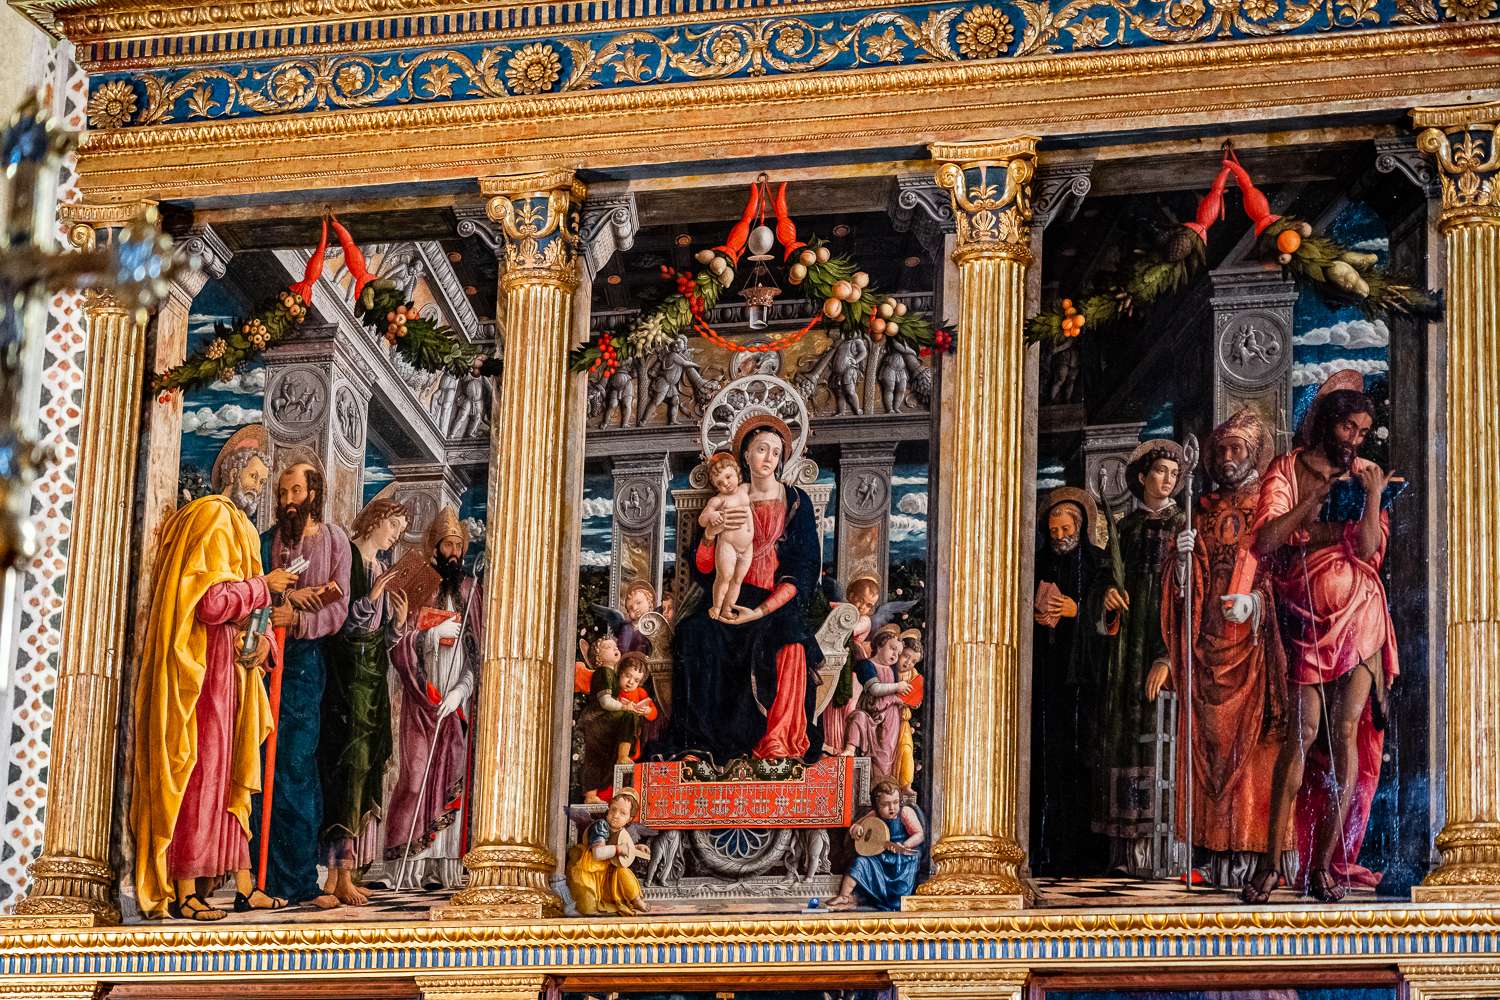 The Altarpiece Mantegna in the Basilica San Zeno Verona, Italy